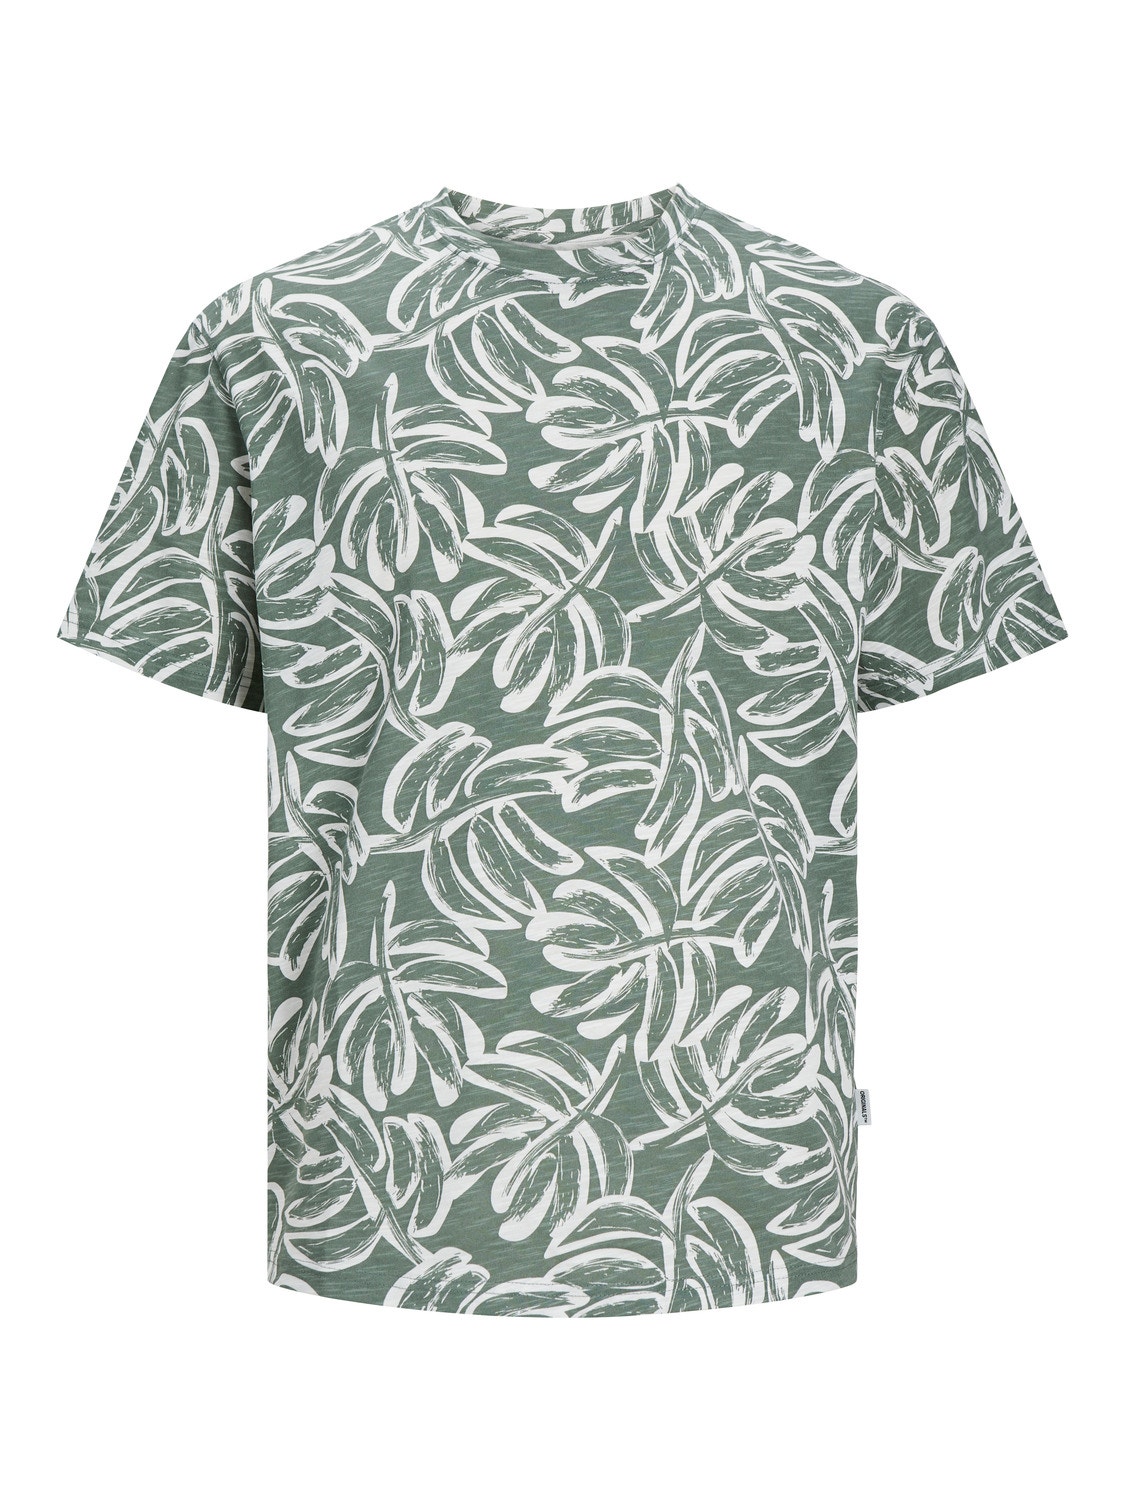 Jack & Jones All Over Print Crew neck T-shirt -Laurel Wreath - 12250434